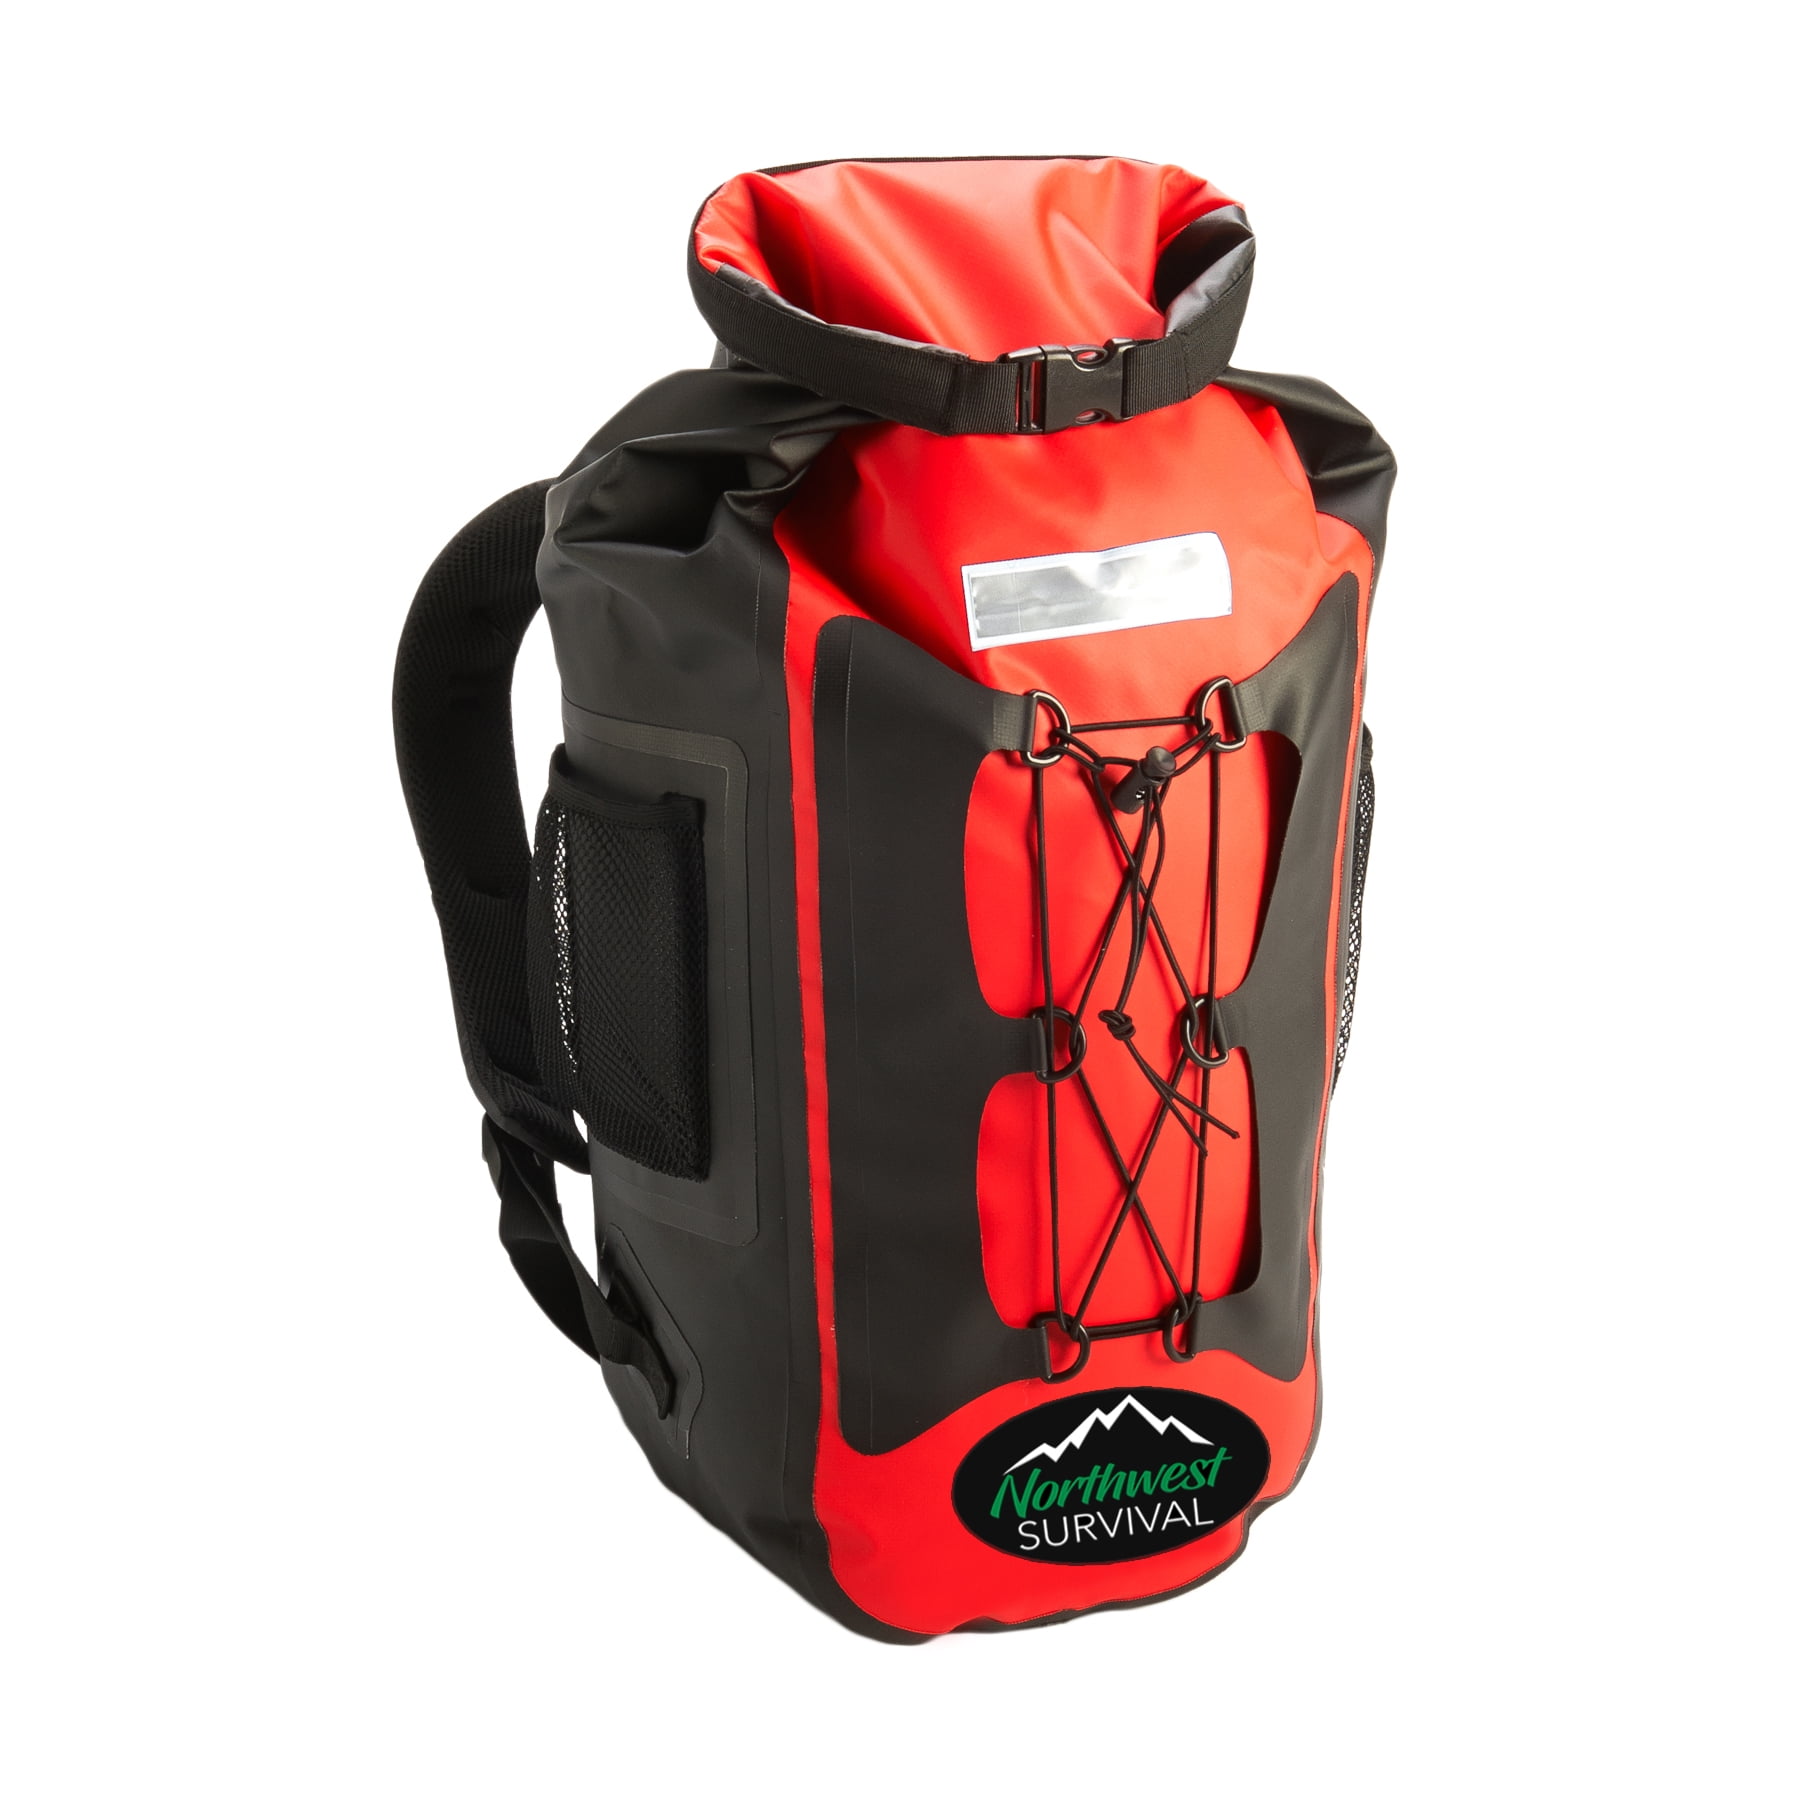 Northwest Survival Waterproof Backpack Red - Walmart.com